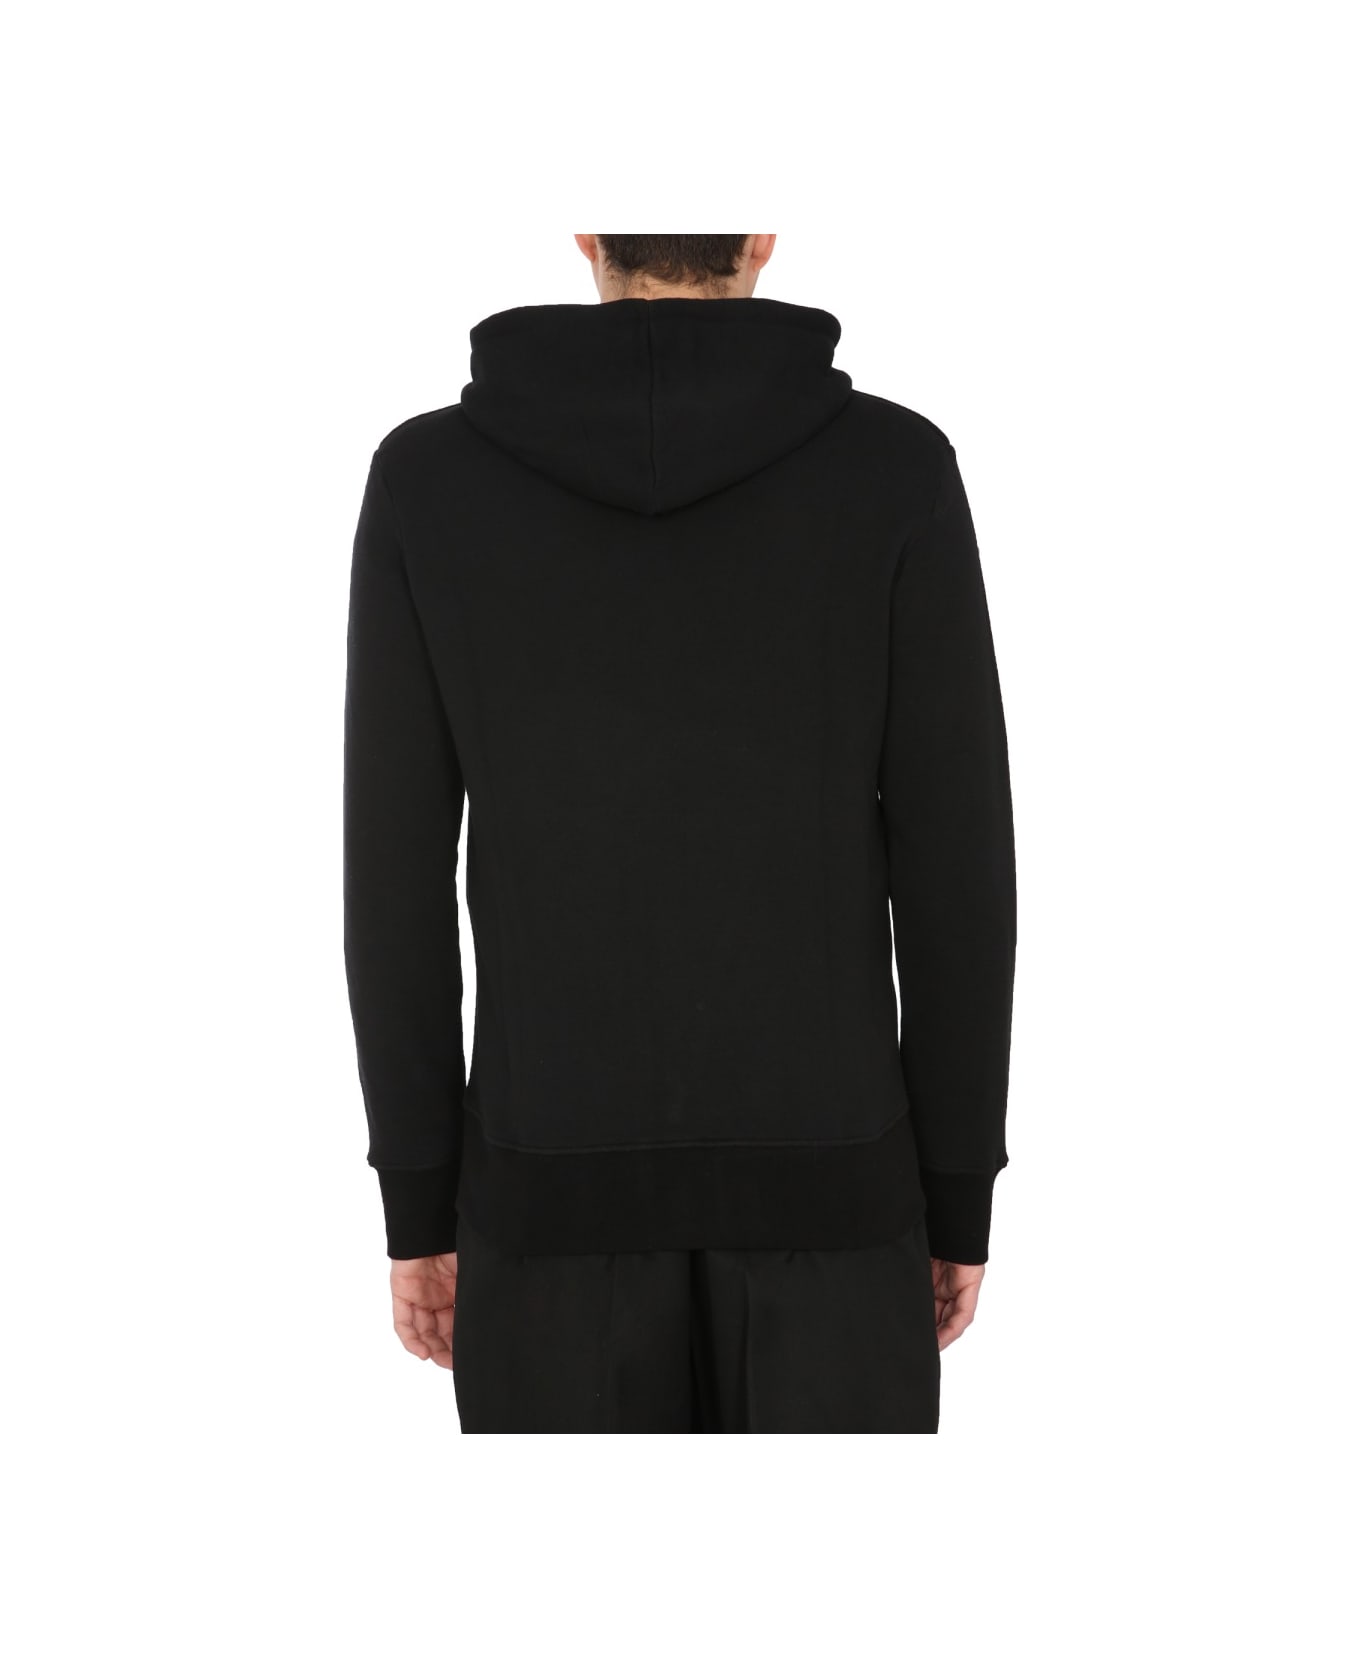 Alexander McQueen Hooded Sweatshirt With Zip - BLACK